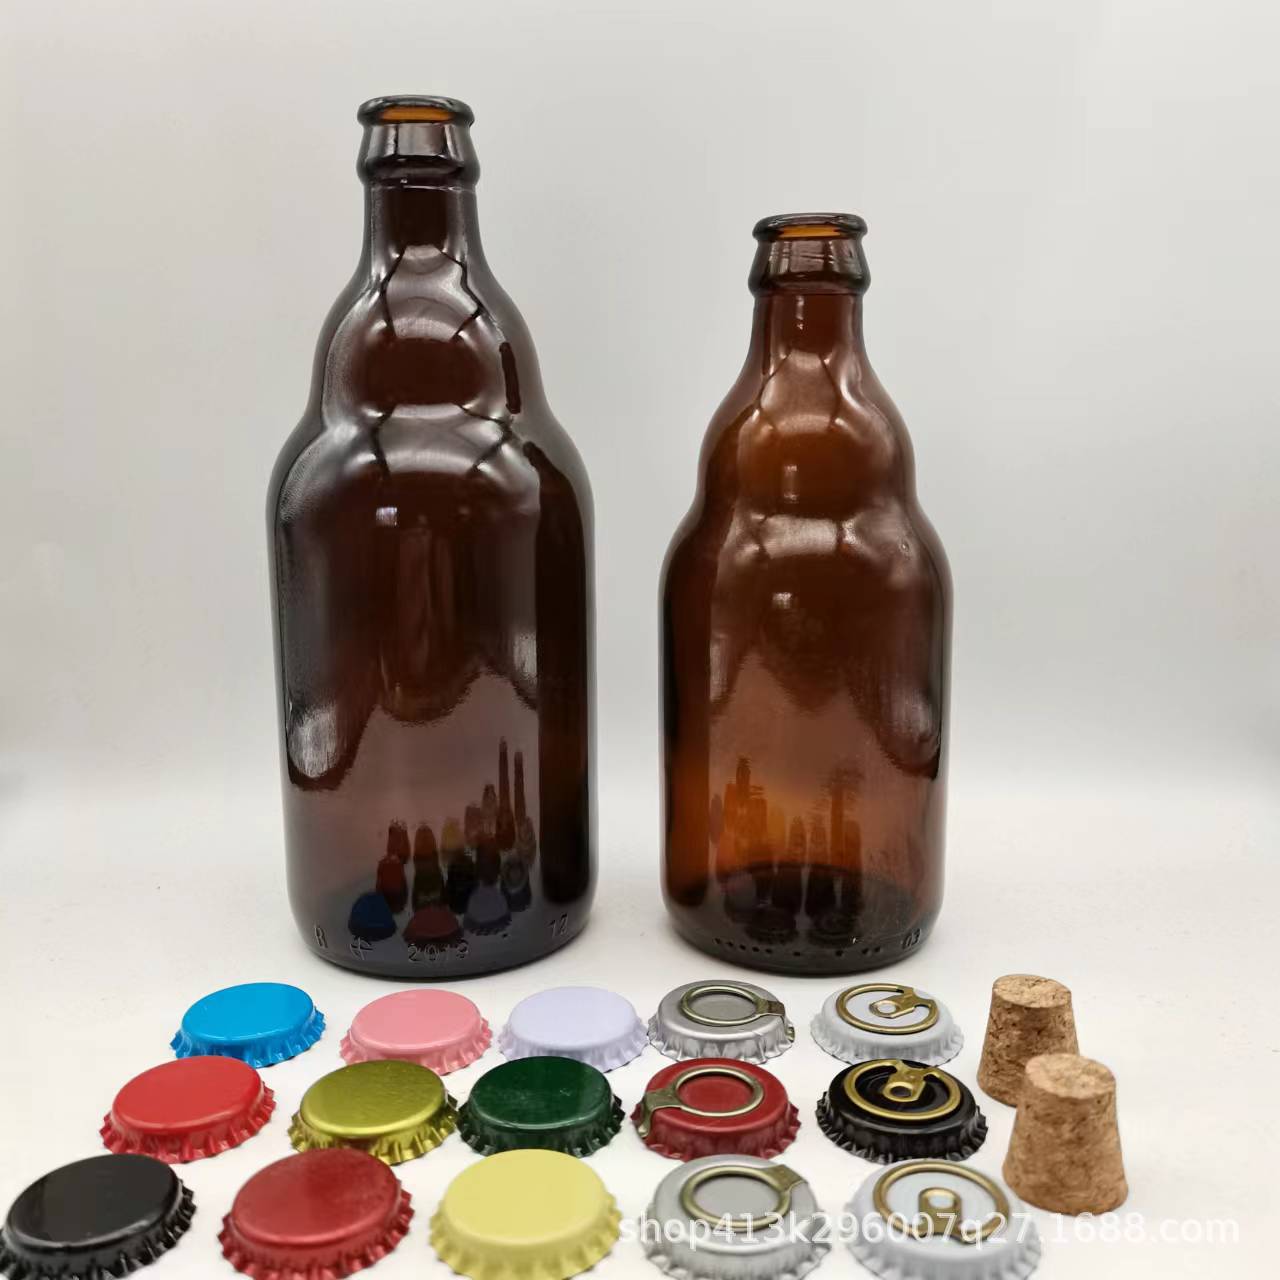 现货 厂家直售 棕色330ml500ml啤酒瓶 小熊啤酒瓶 比利时啤酒汽水